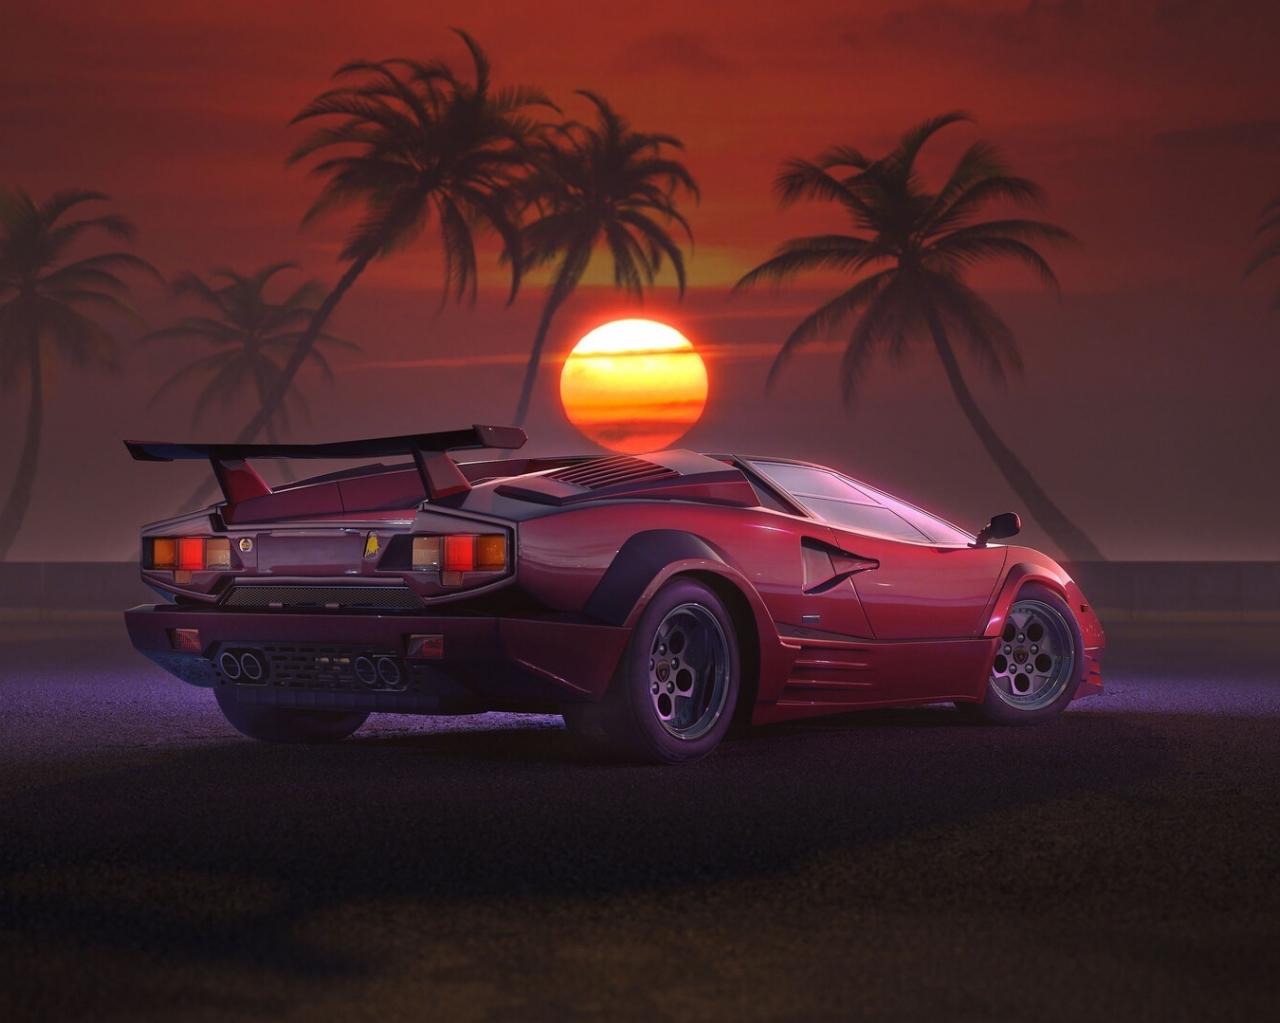 Wallpaper Retrowave Outdrive Car Sunset